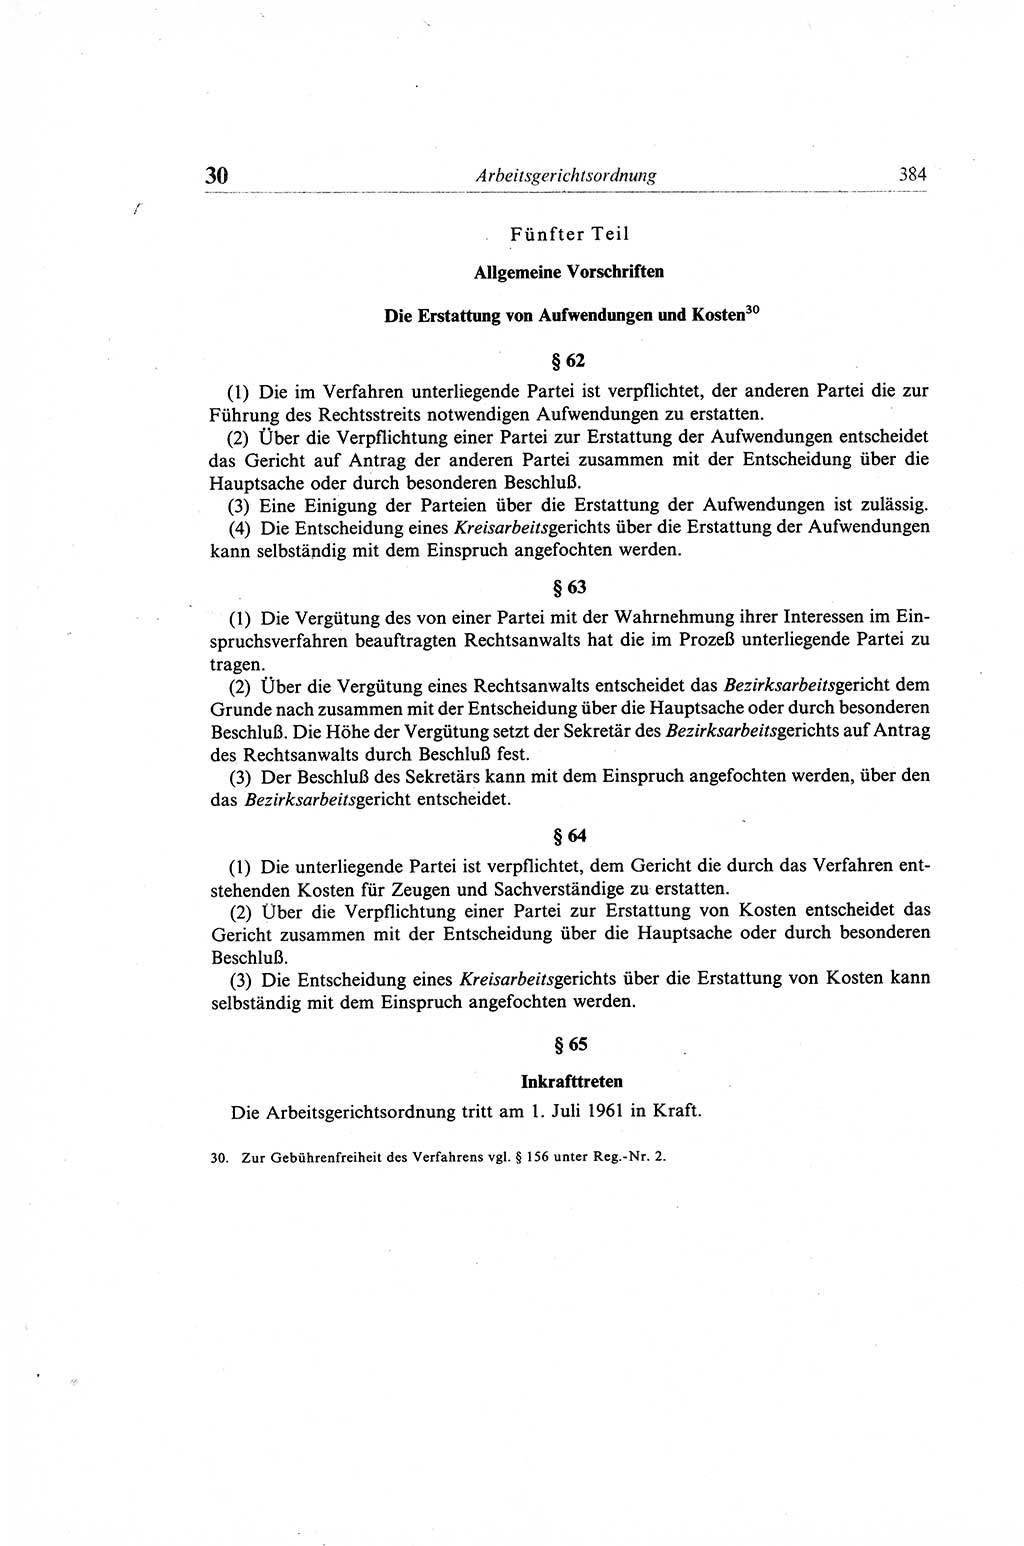 Gesetzbuch der Arbeit (GBA) und andere ausgewählte rechtliche Bestimmungen [Deutsche Demokratische Republik (DDR)] 1968, Seite 384 (GBA DDR 1968, S. 384)